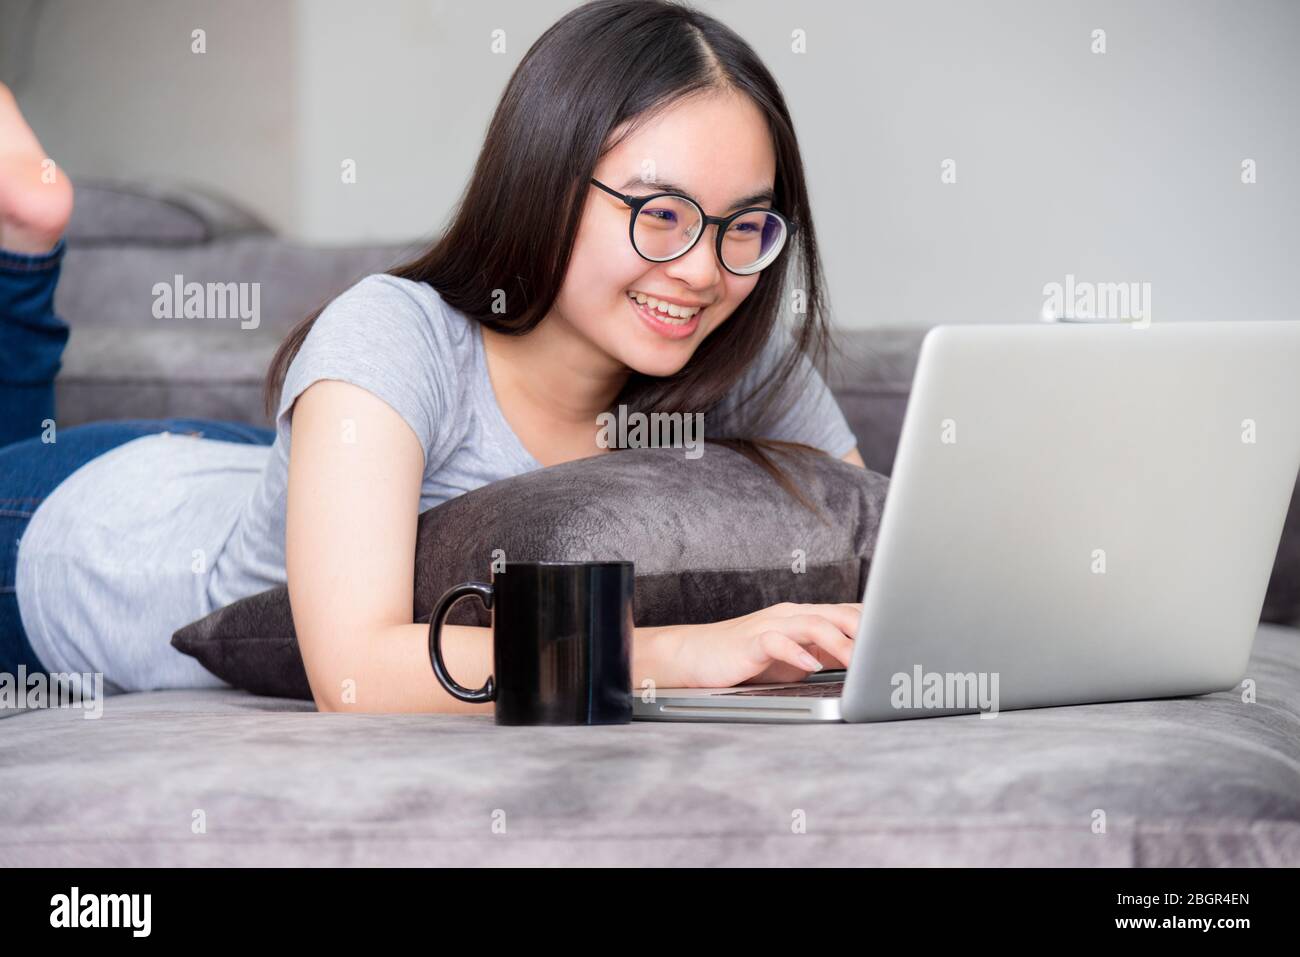 Porträt schöne asiatische junge Frau liegen entspannen Arbeit mit einem Laptop, nette Mädchen Teens Blick auf den Monitor lächeln glücklich auf dem Sofa arbeiten entfernt Stockfoto